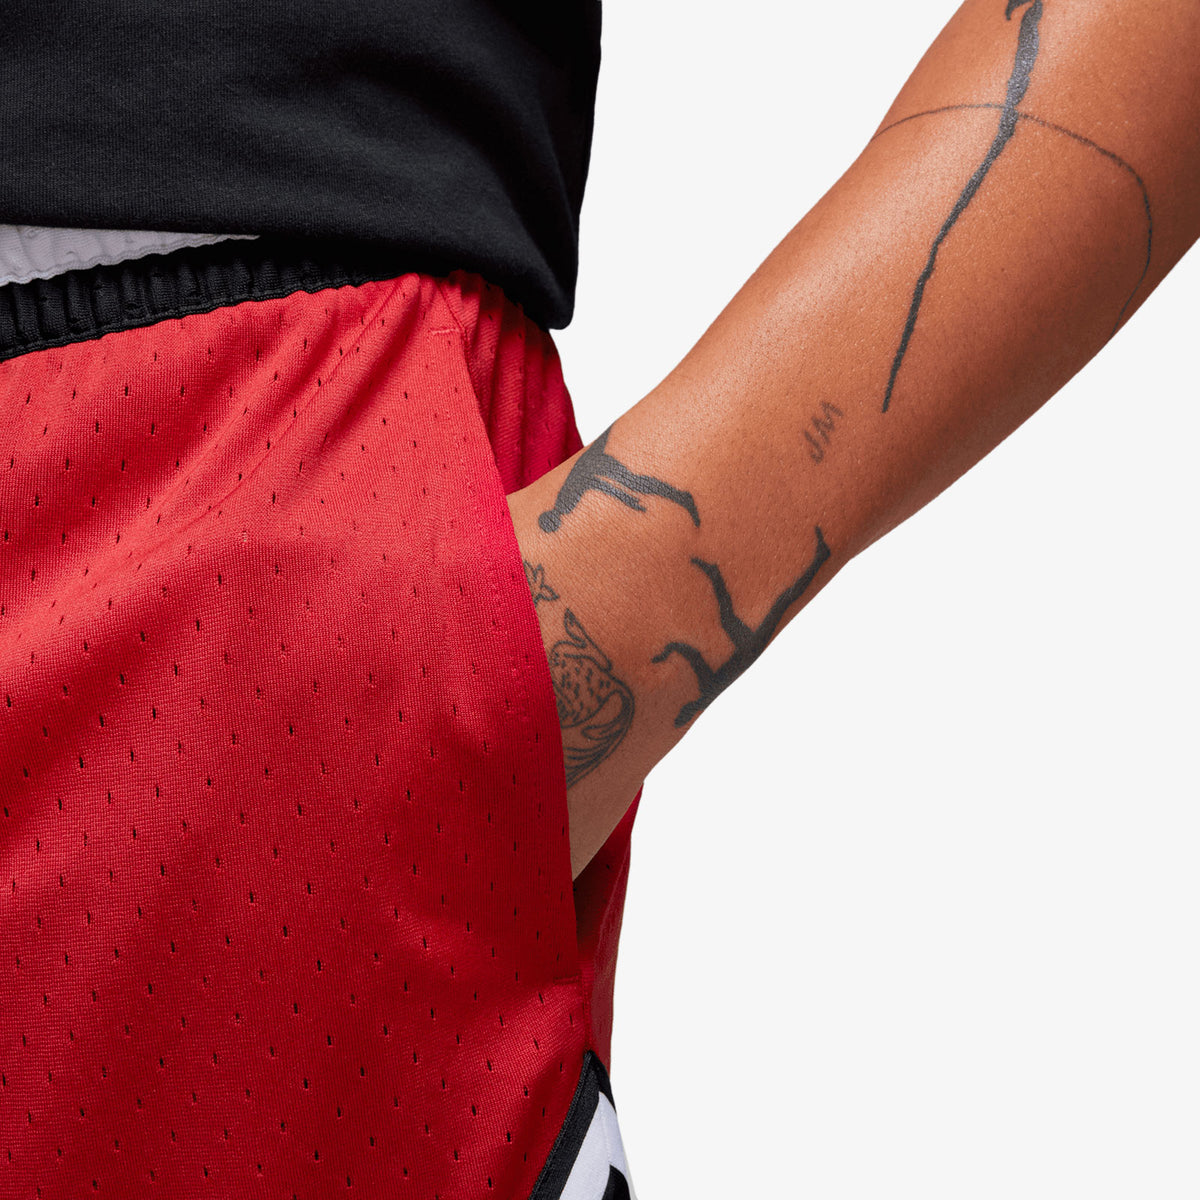 Jordan Sport Dri-FIT Diamond Shorts - Red/White